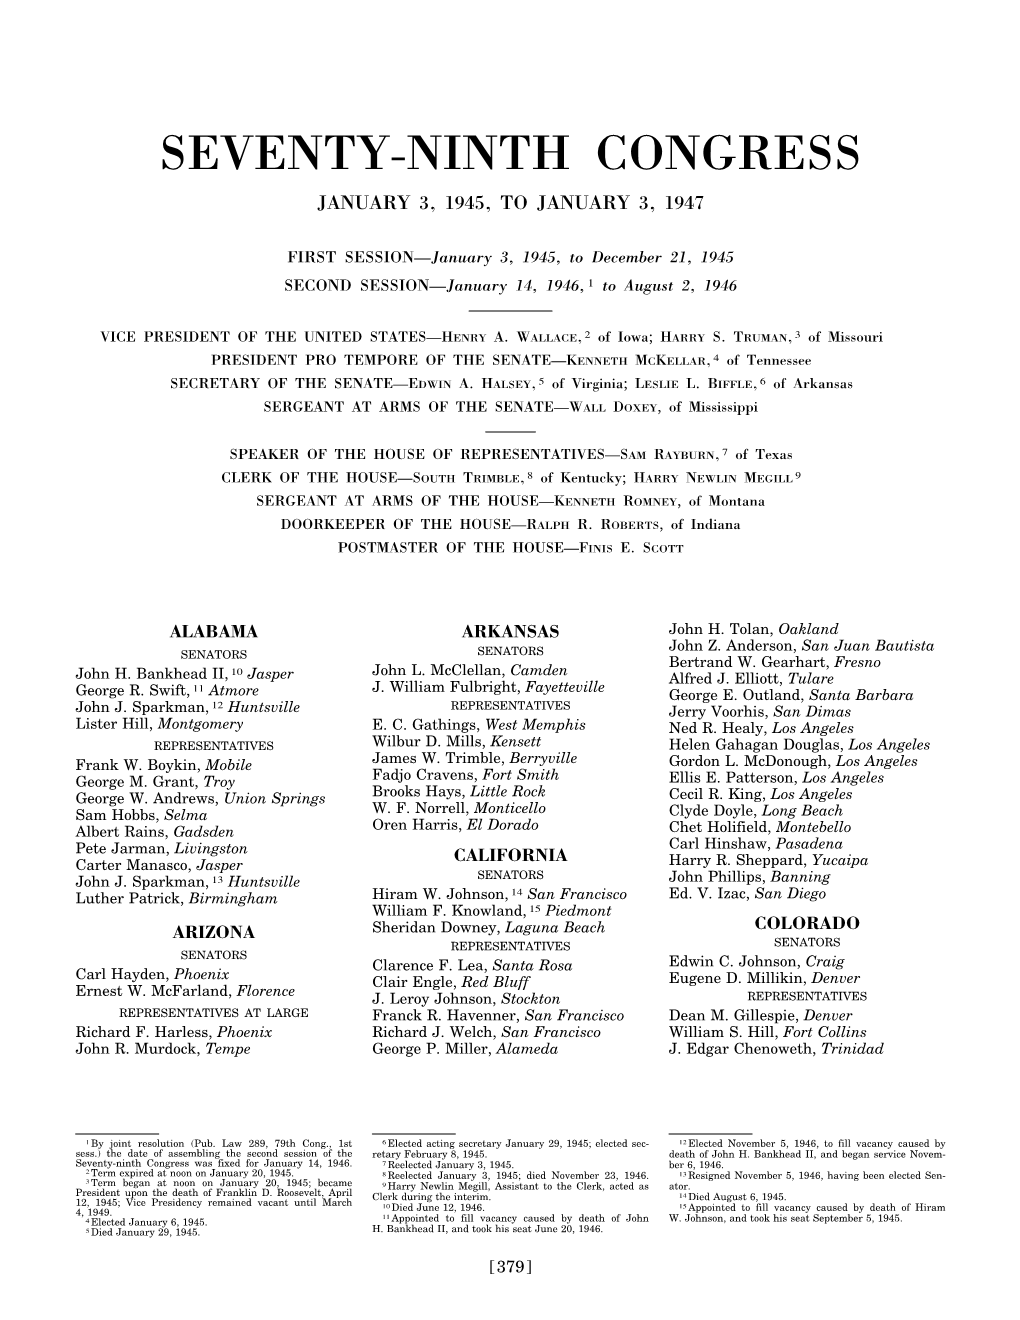 Seventy-Ninth Congress January 3, 1945, to January 3, 1947